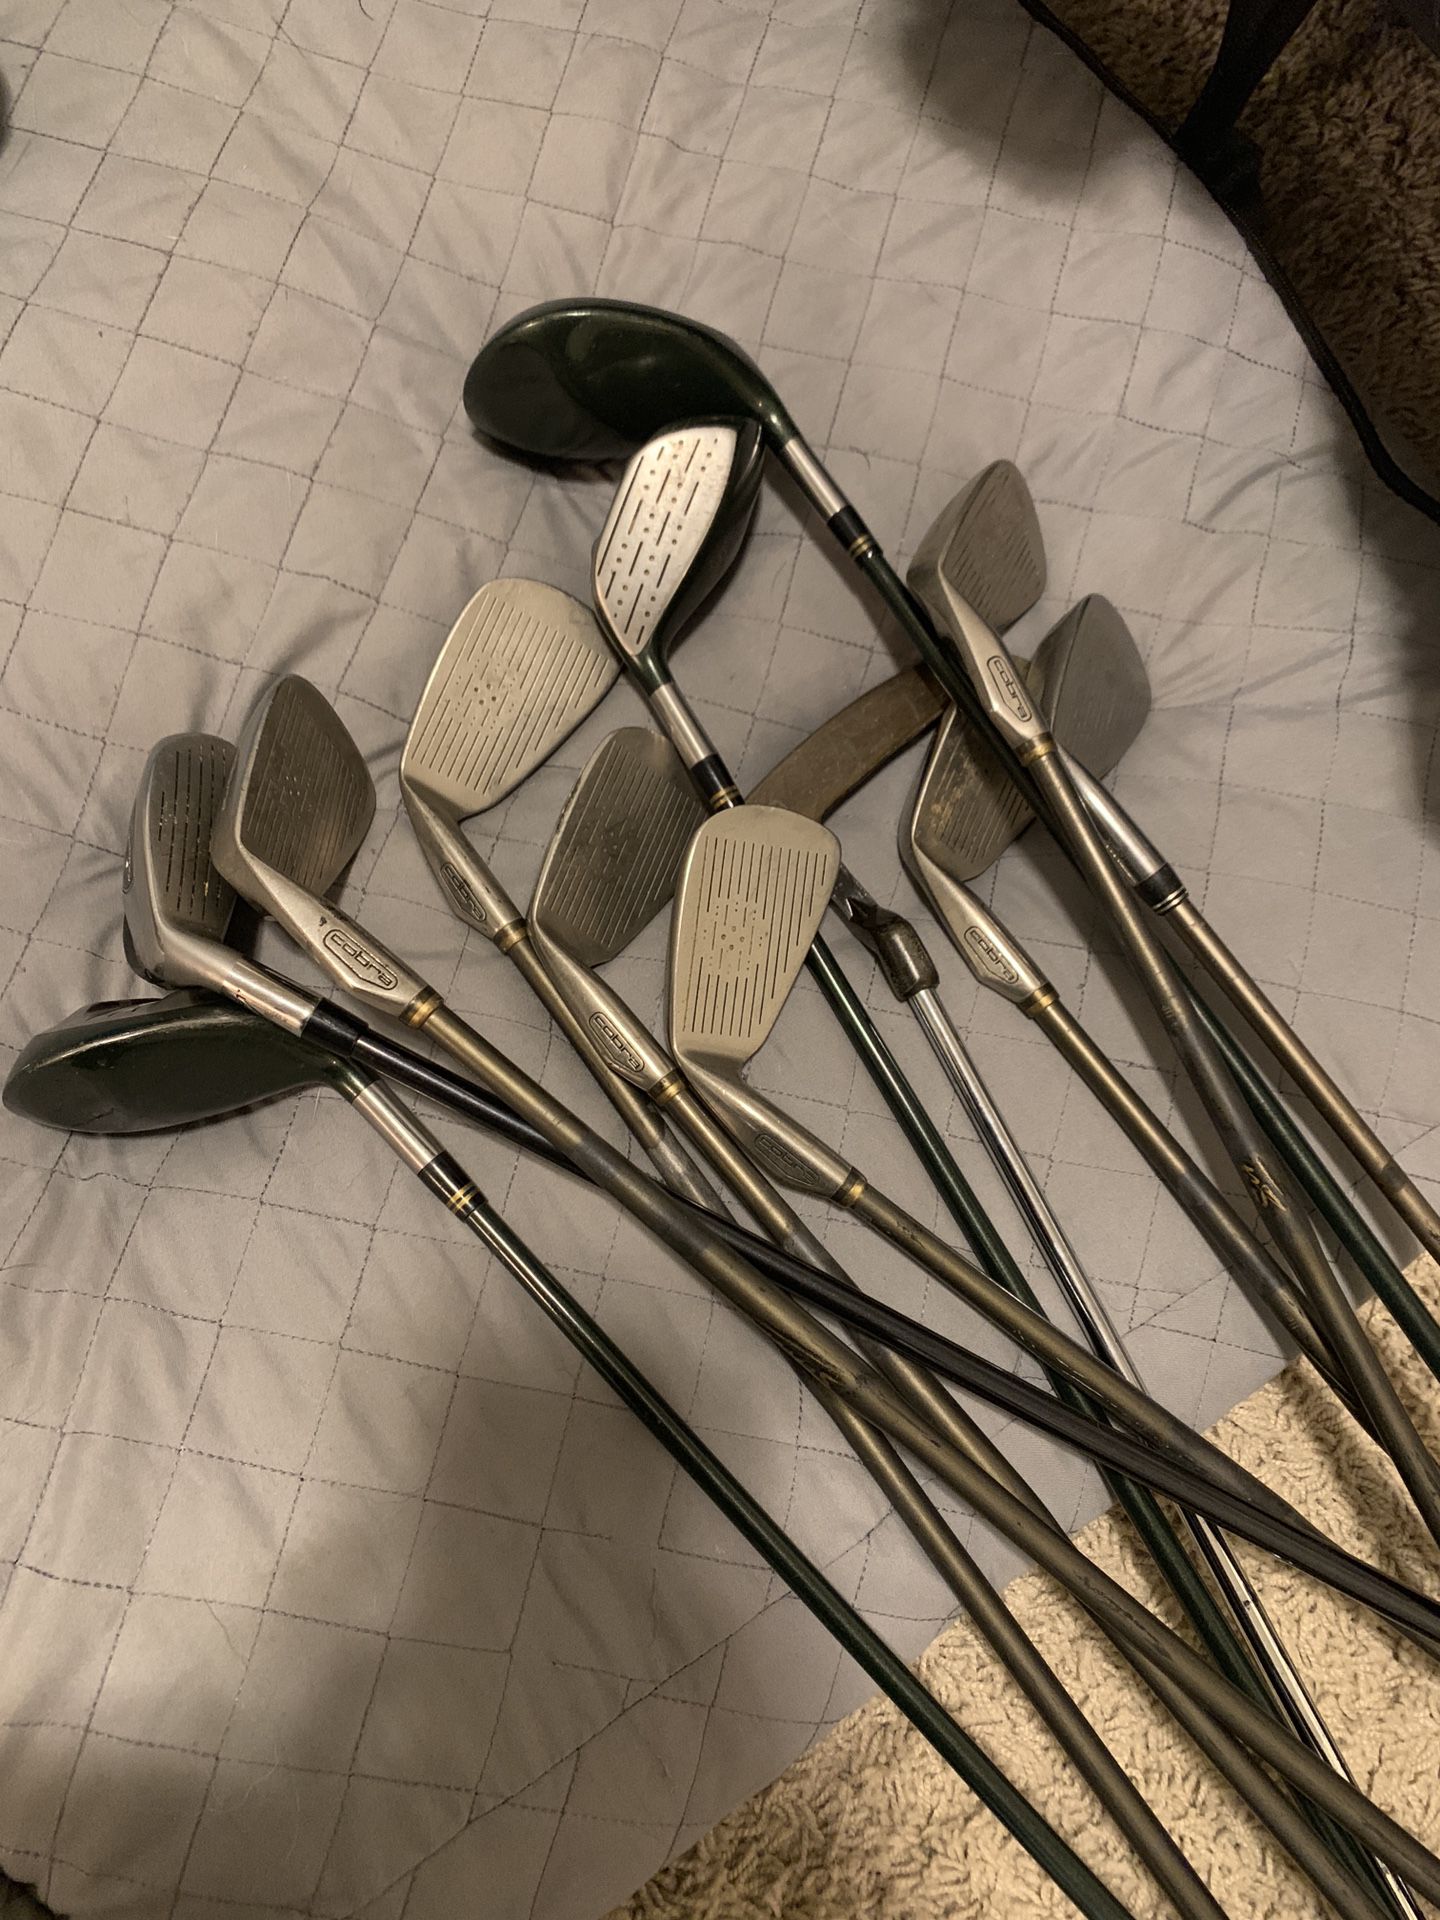 Set of 11 Golf clubs